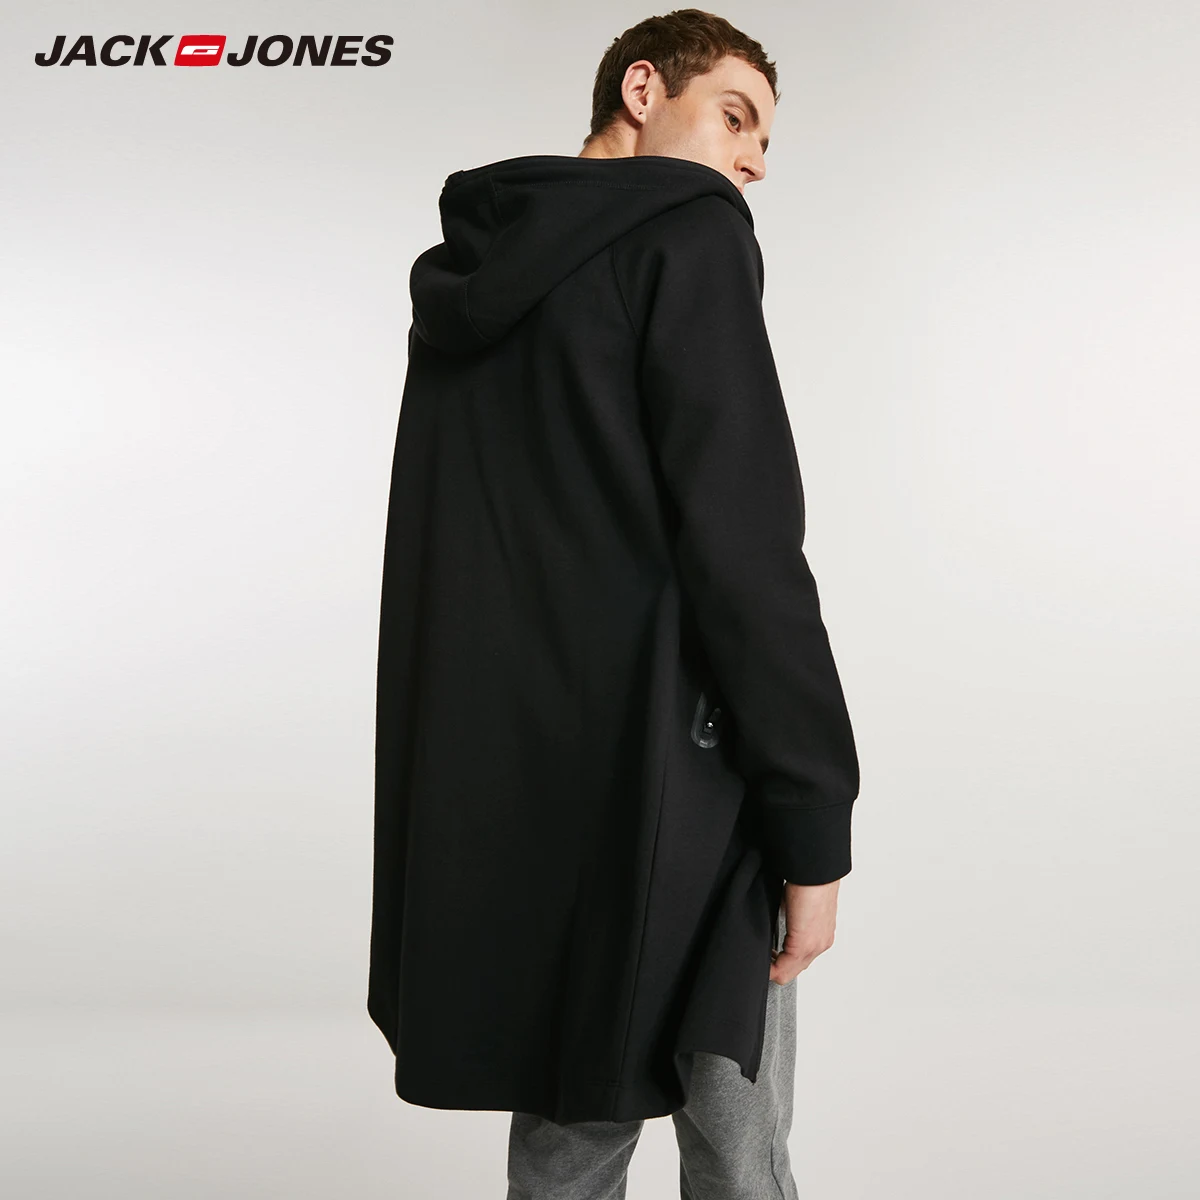 Джек Джонс осень чистый хлопок случайные с длинными рукавами толстовки куртка пальто | 218333531